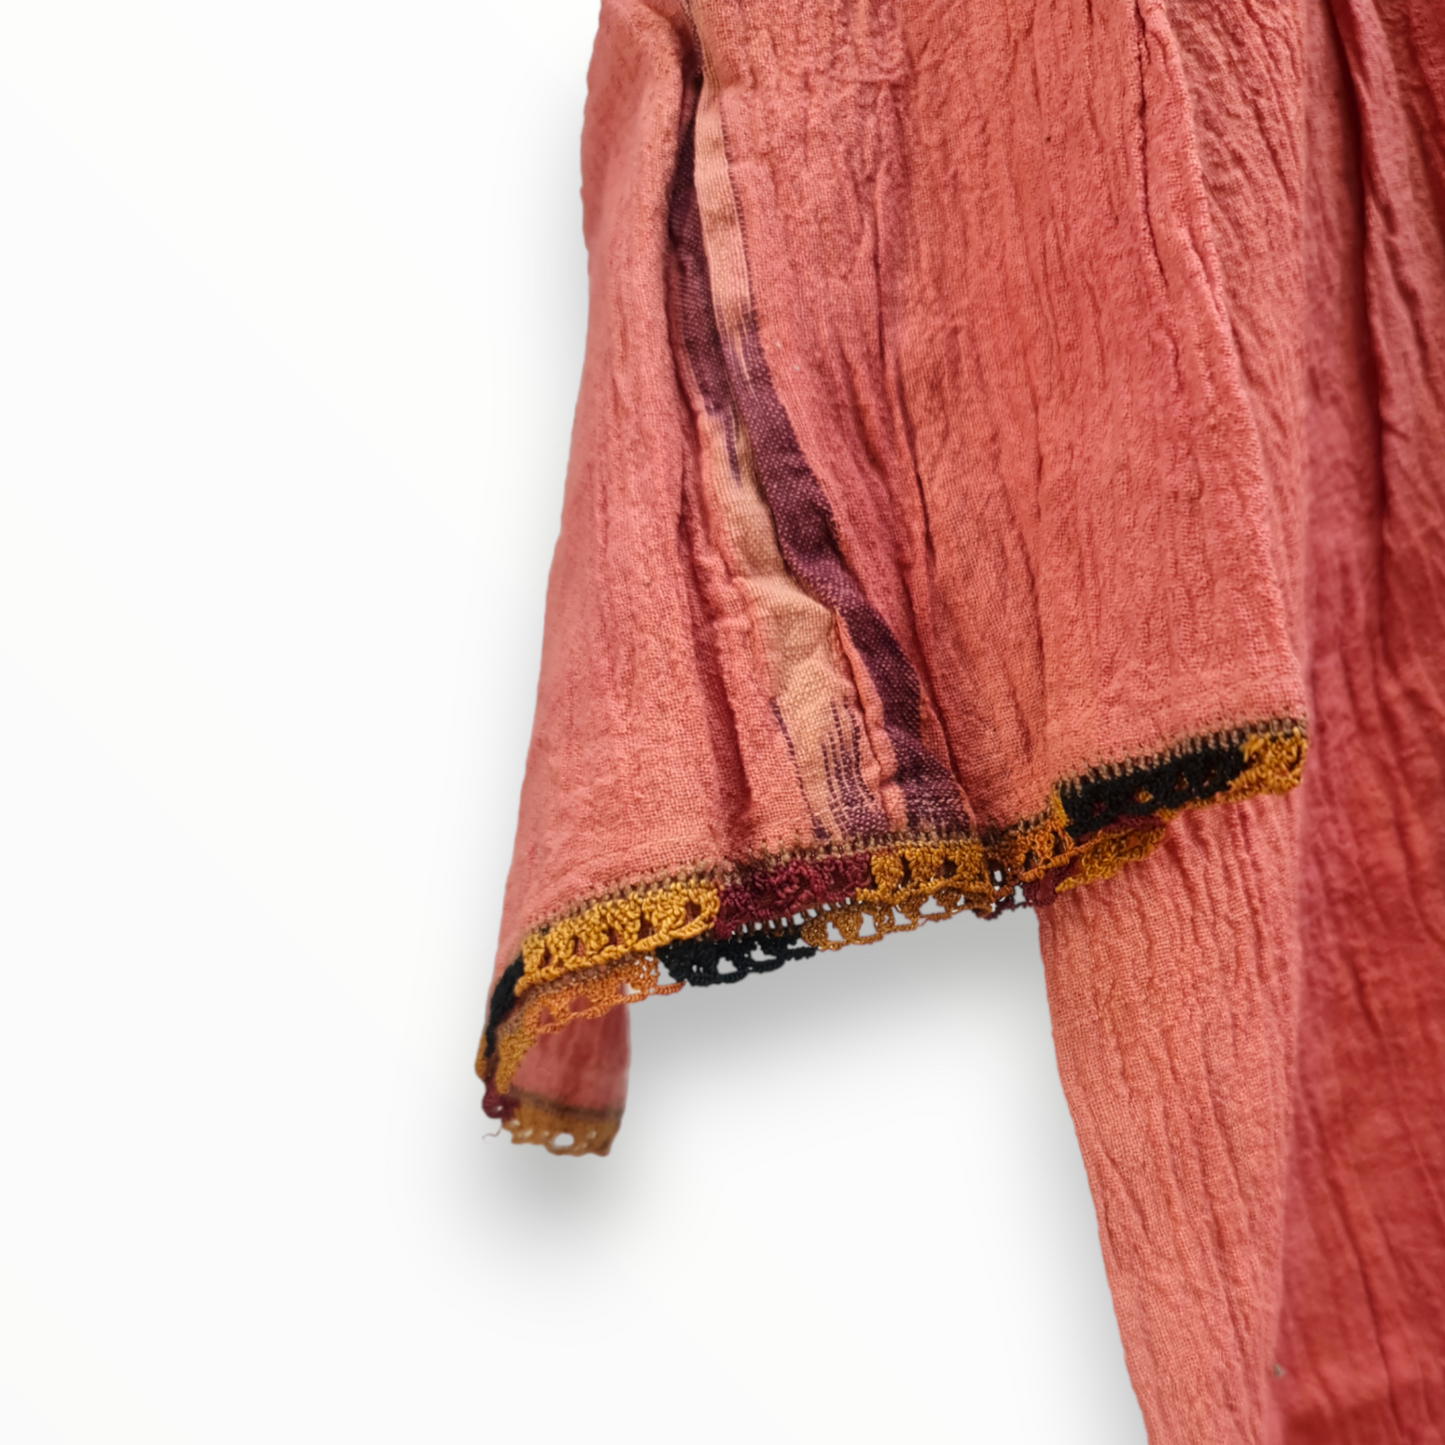 Antique Turkish Hand-Woven Silk Women Shirt